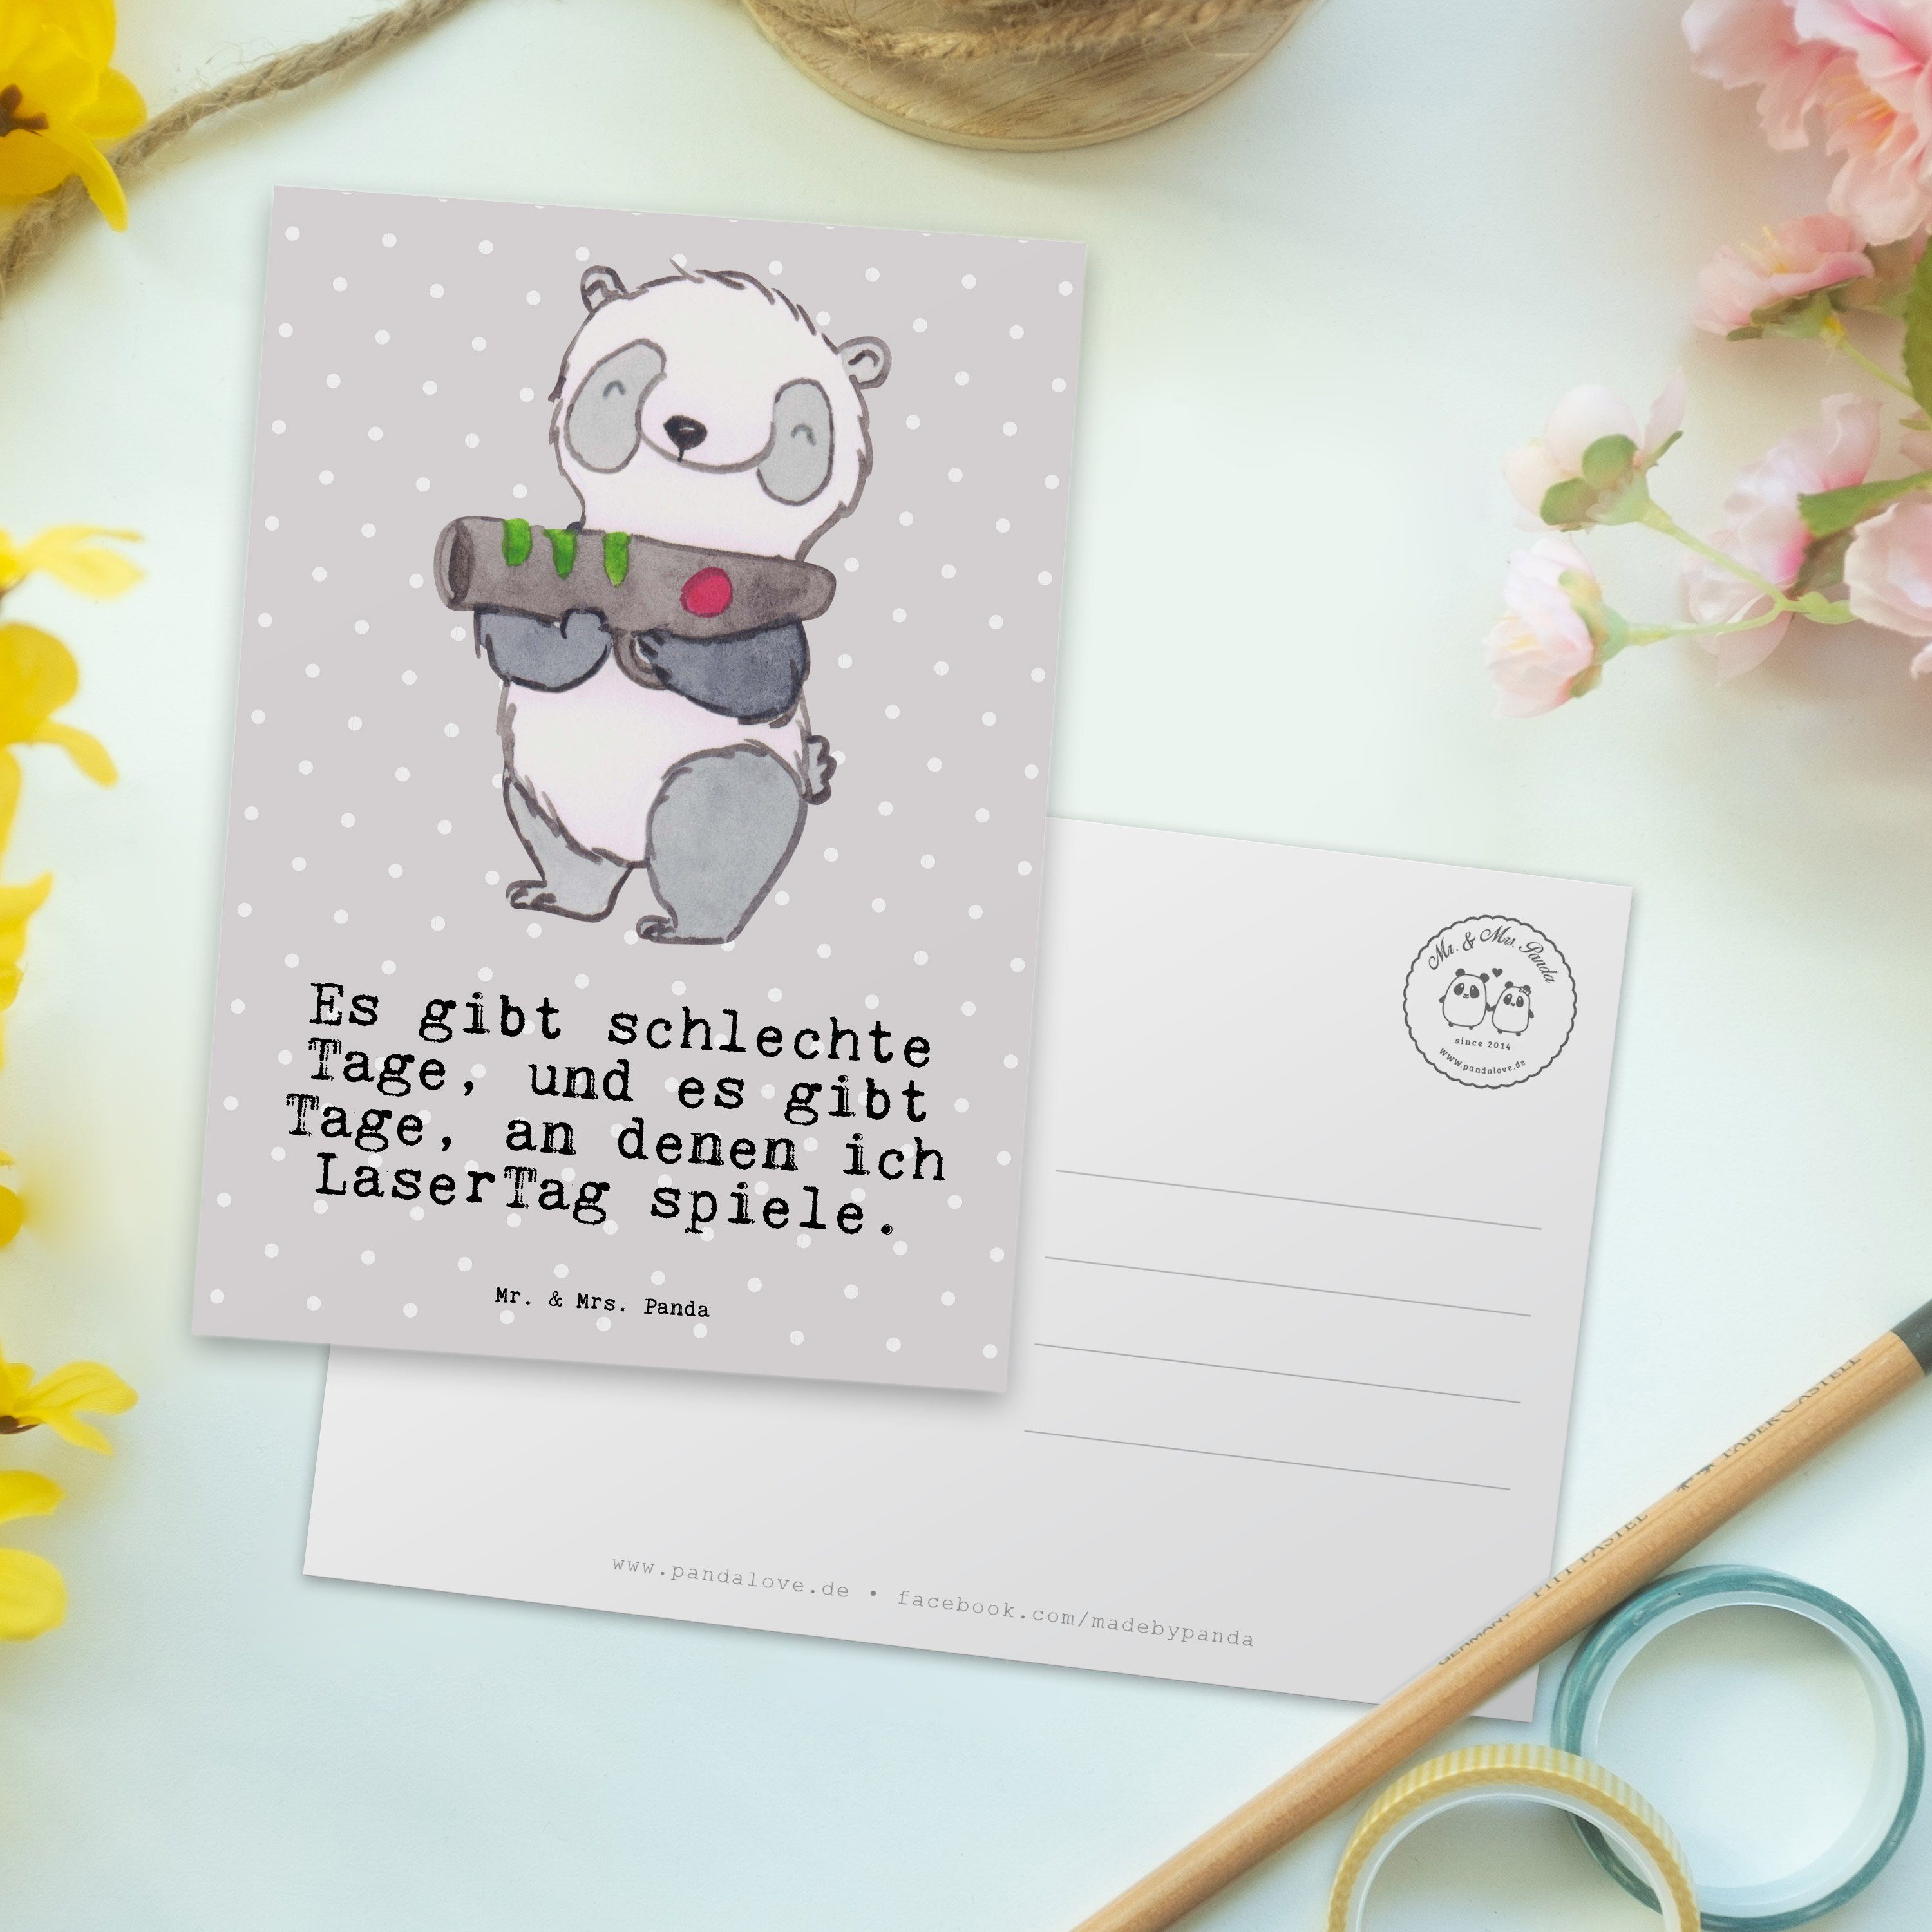 Mr. & Mrs. Panda Postkarte Geschenk, Grau Grußkarte, Schenken, - LaserTag Pastell - E Tage Panda